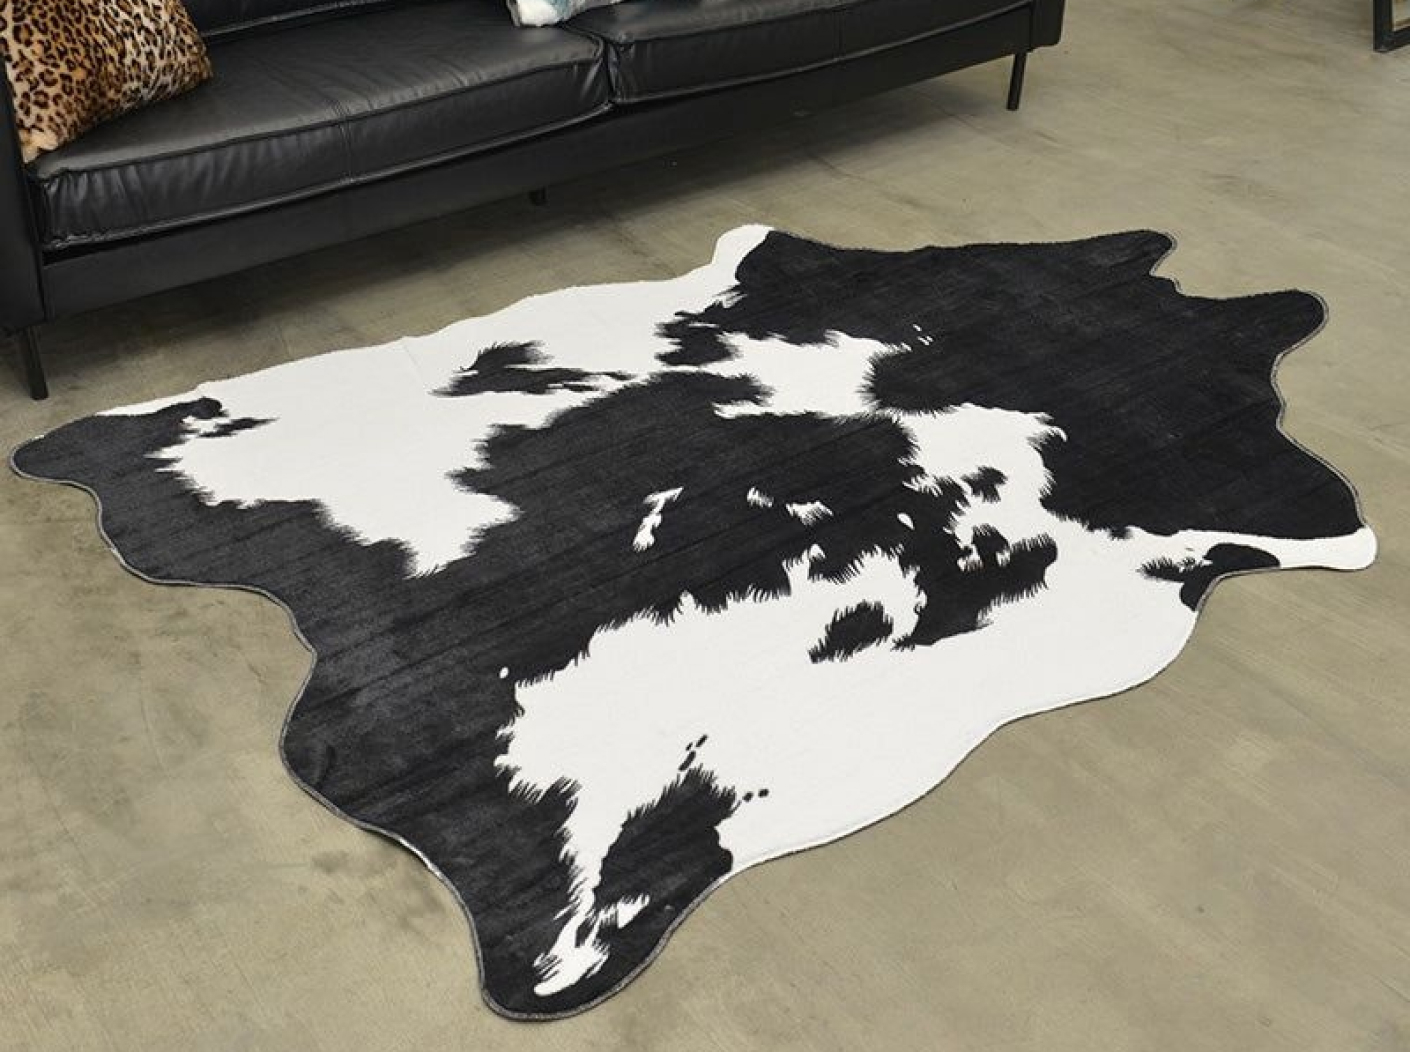 Ковровое полотно с замшей коллекции SAFARI / Принт- COW ALABAMA / цвет - белый, черный